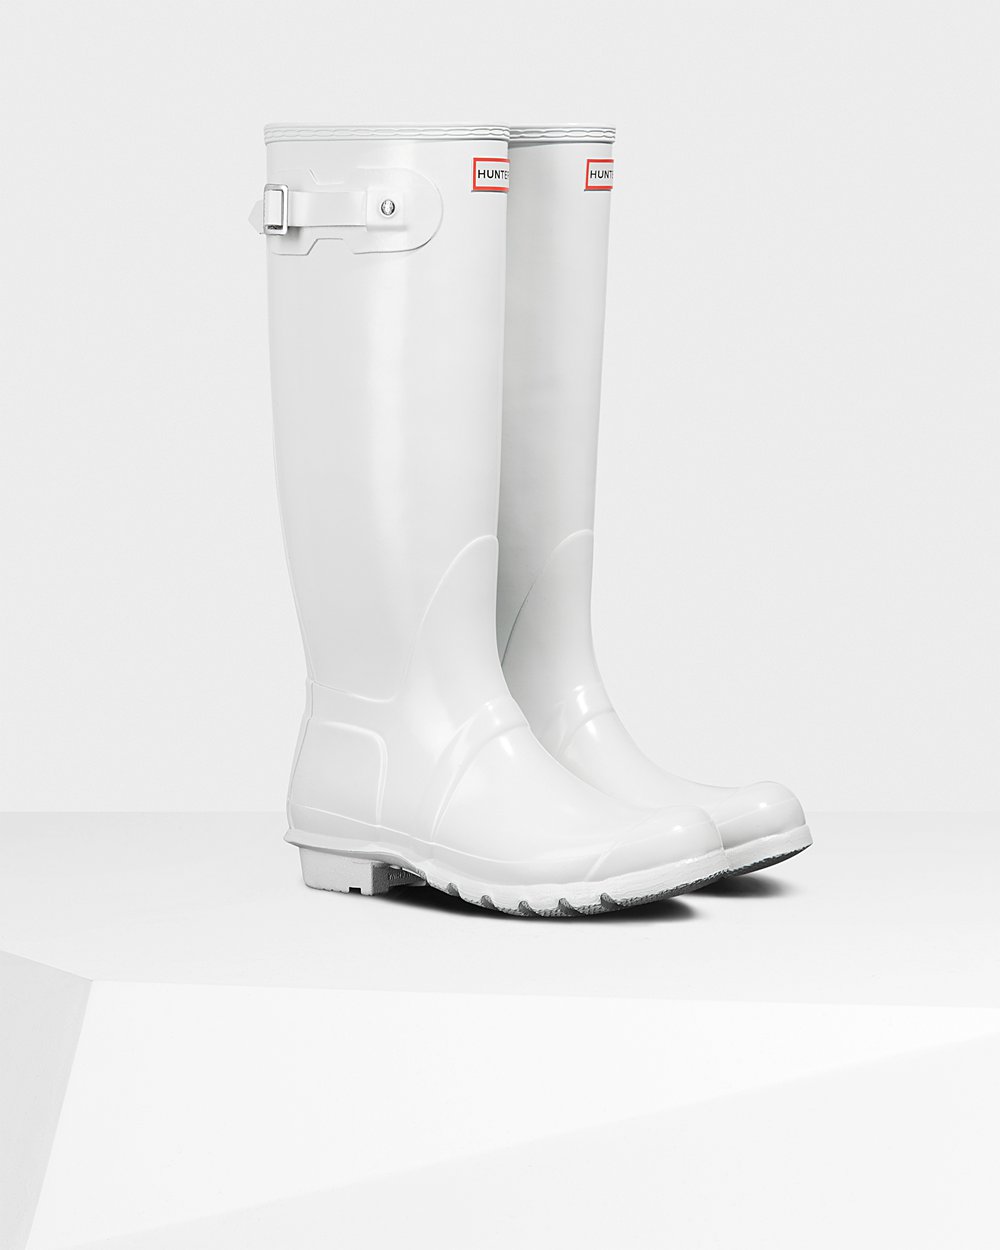 Womens Tall Rain Boots - Hunter Original Gloss (96QZKVTNA) - White